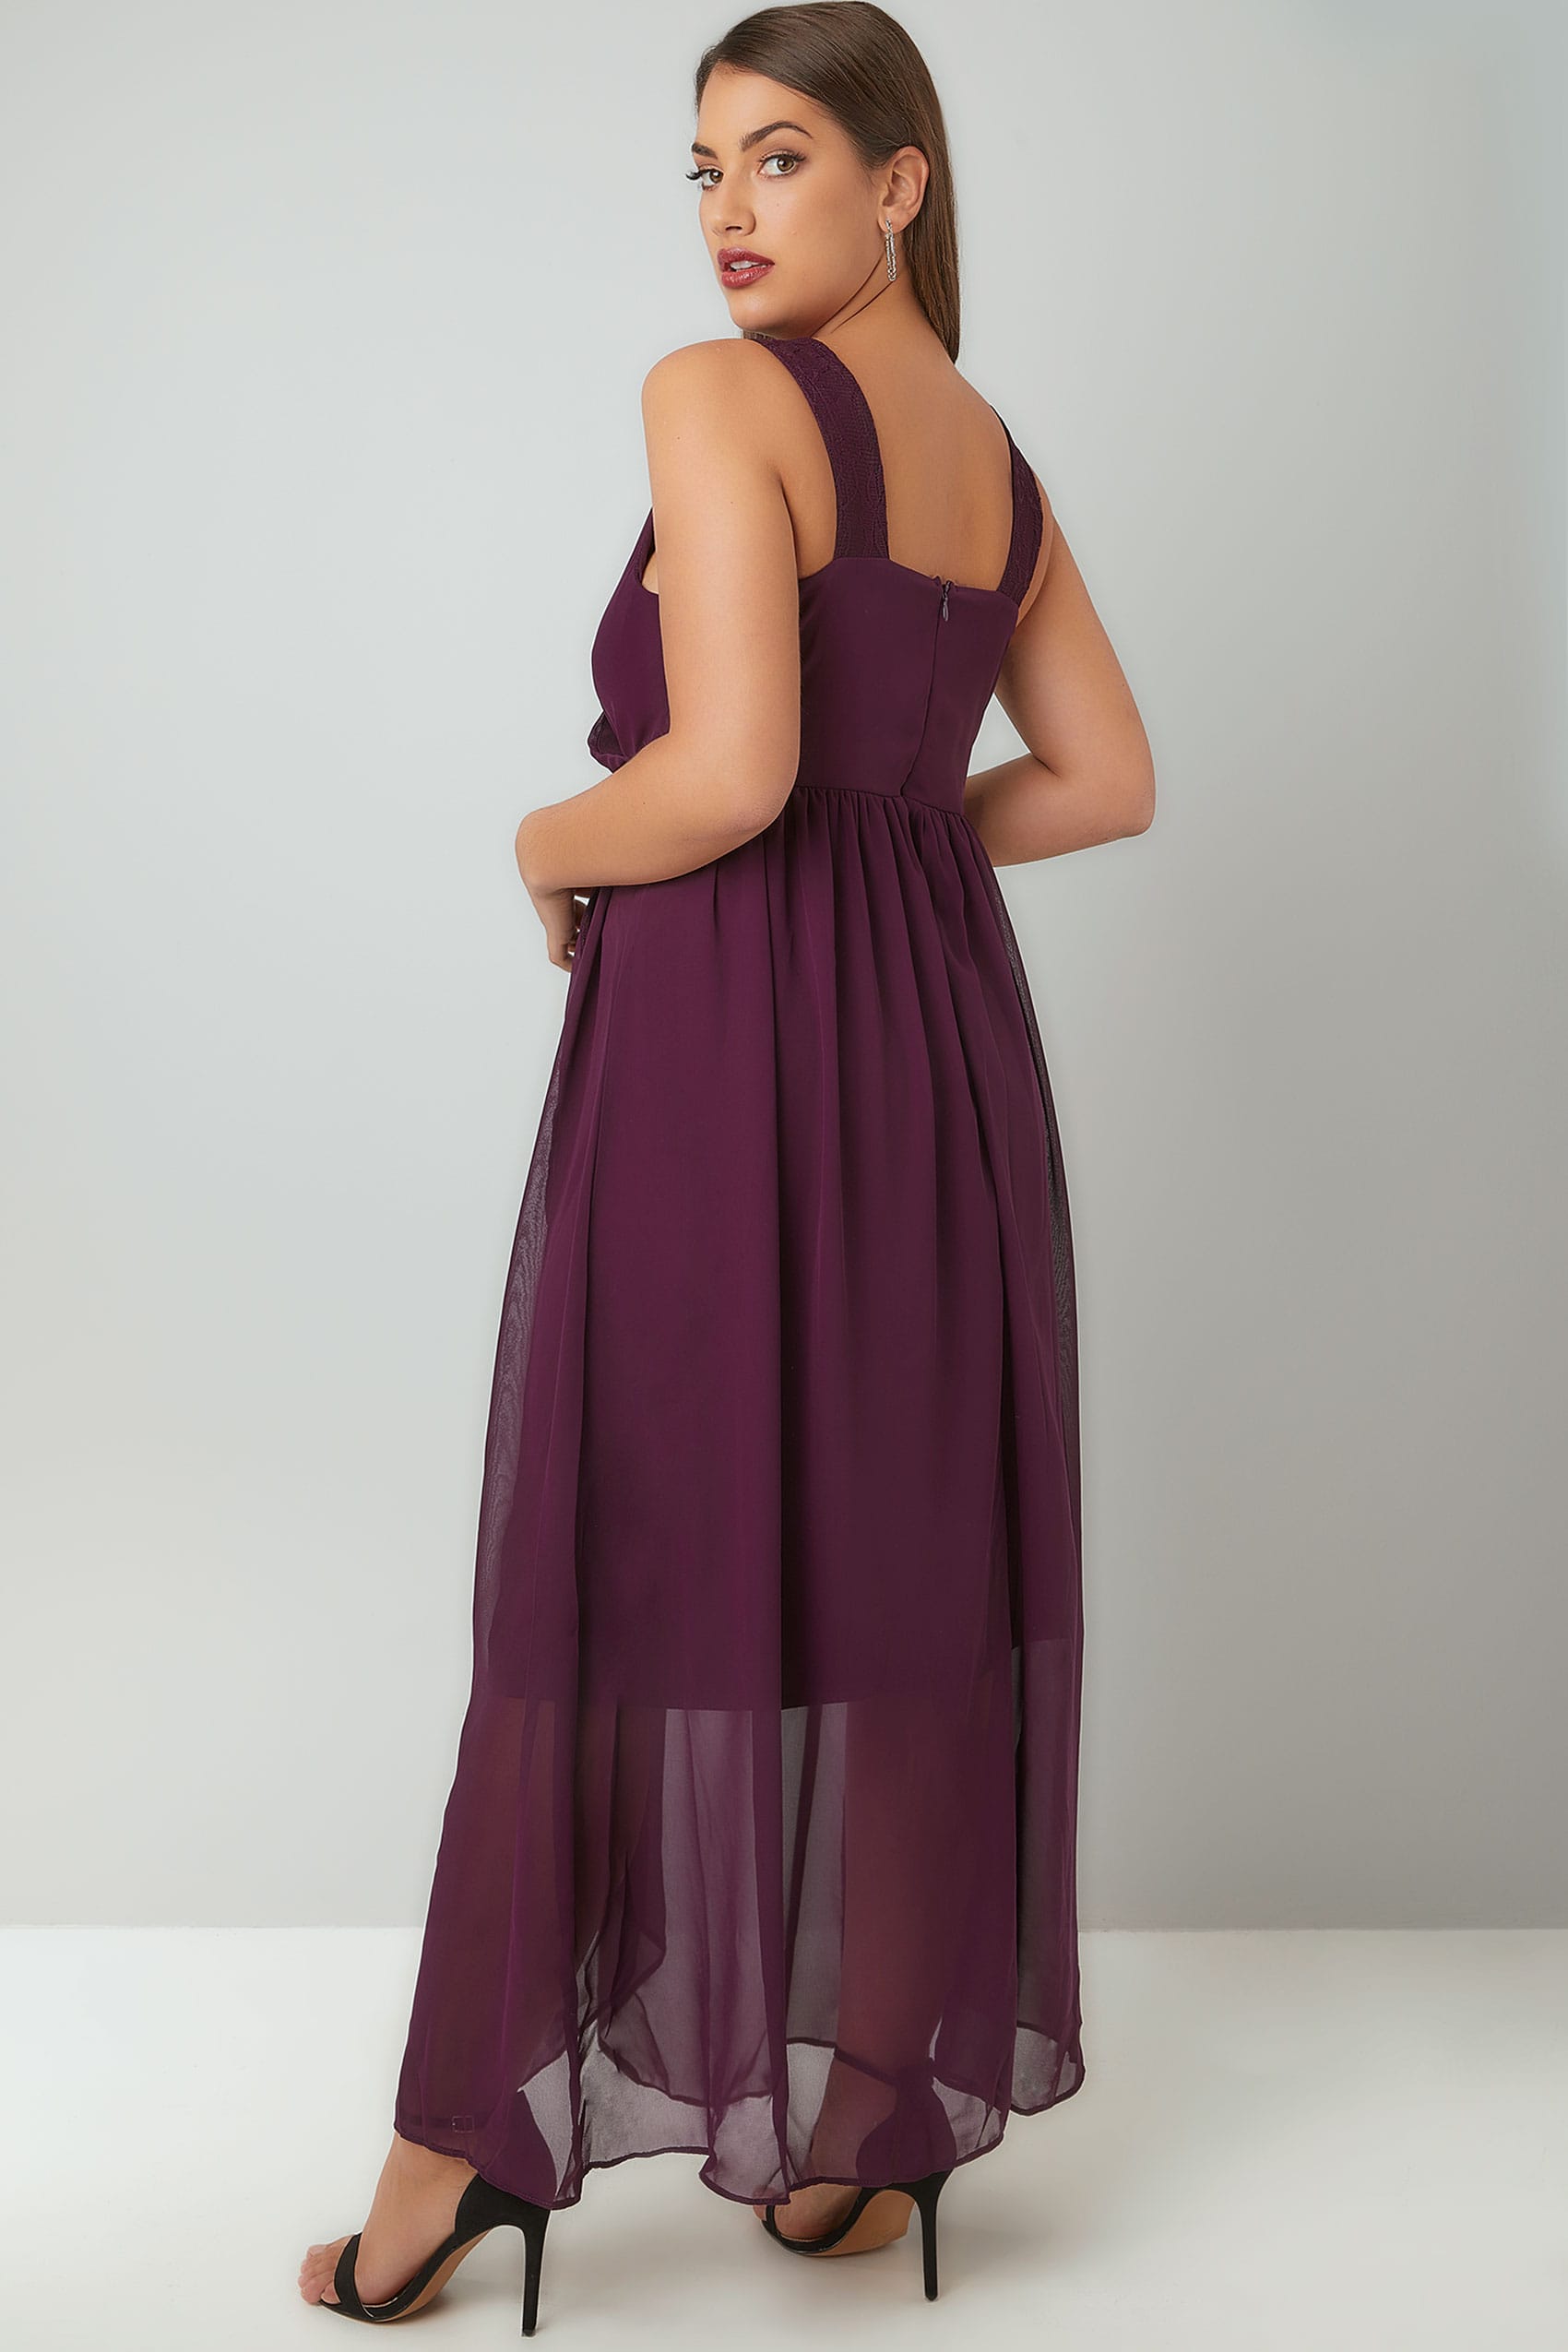 Purple Chiffon Maxi Dress With Wrap Front & Lace Details, Plus size 16 ...